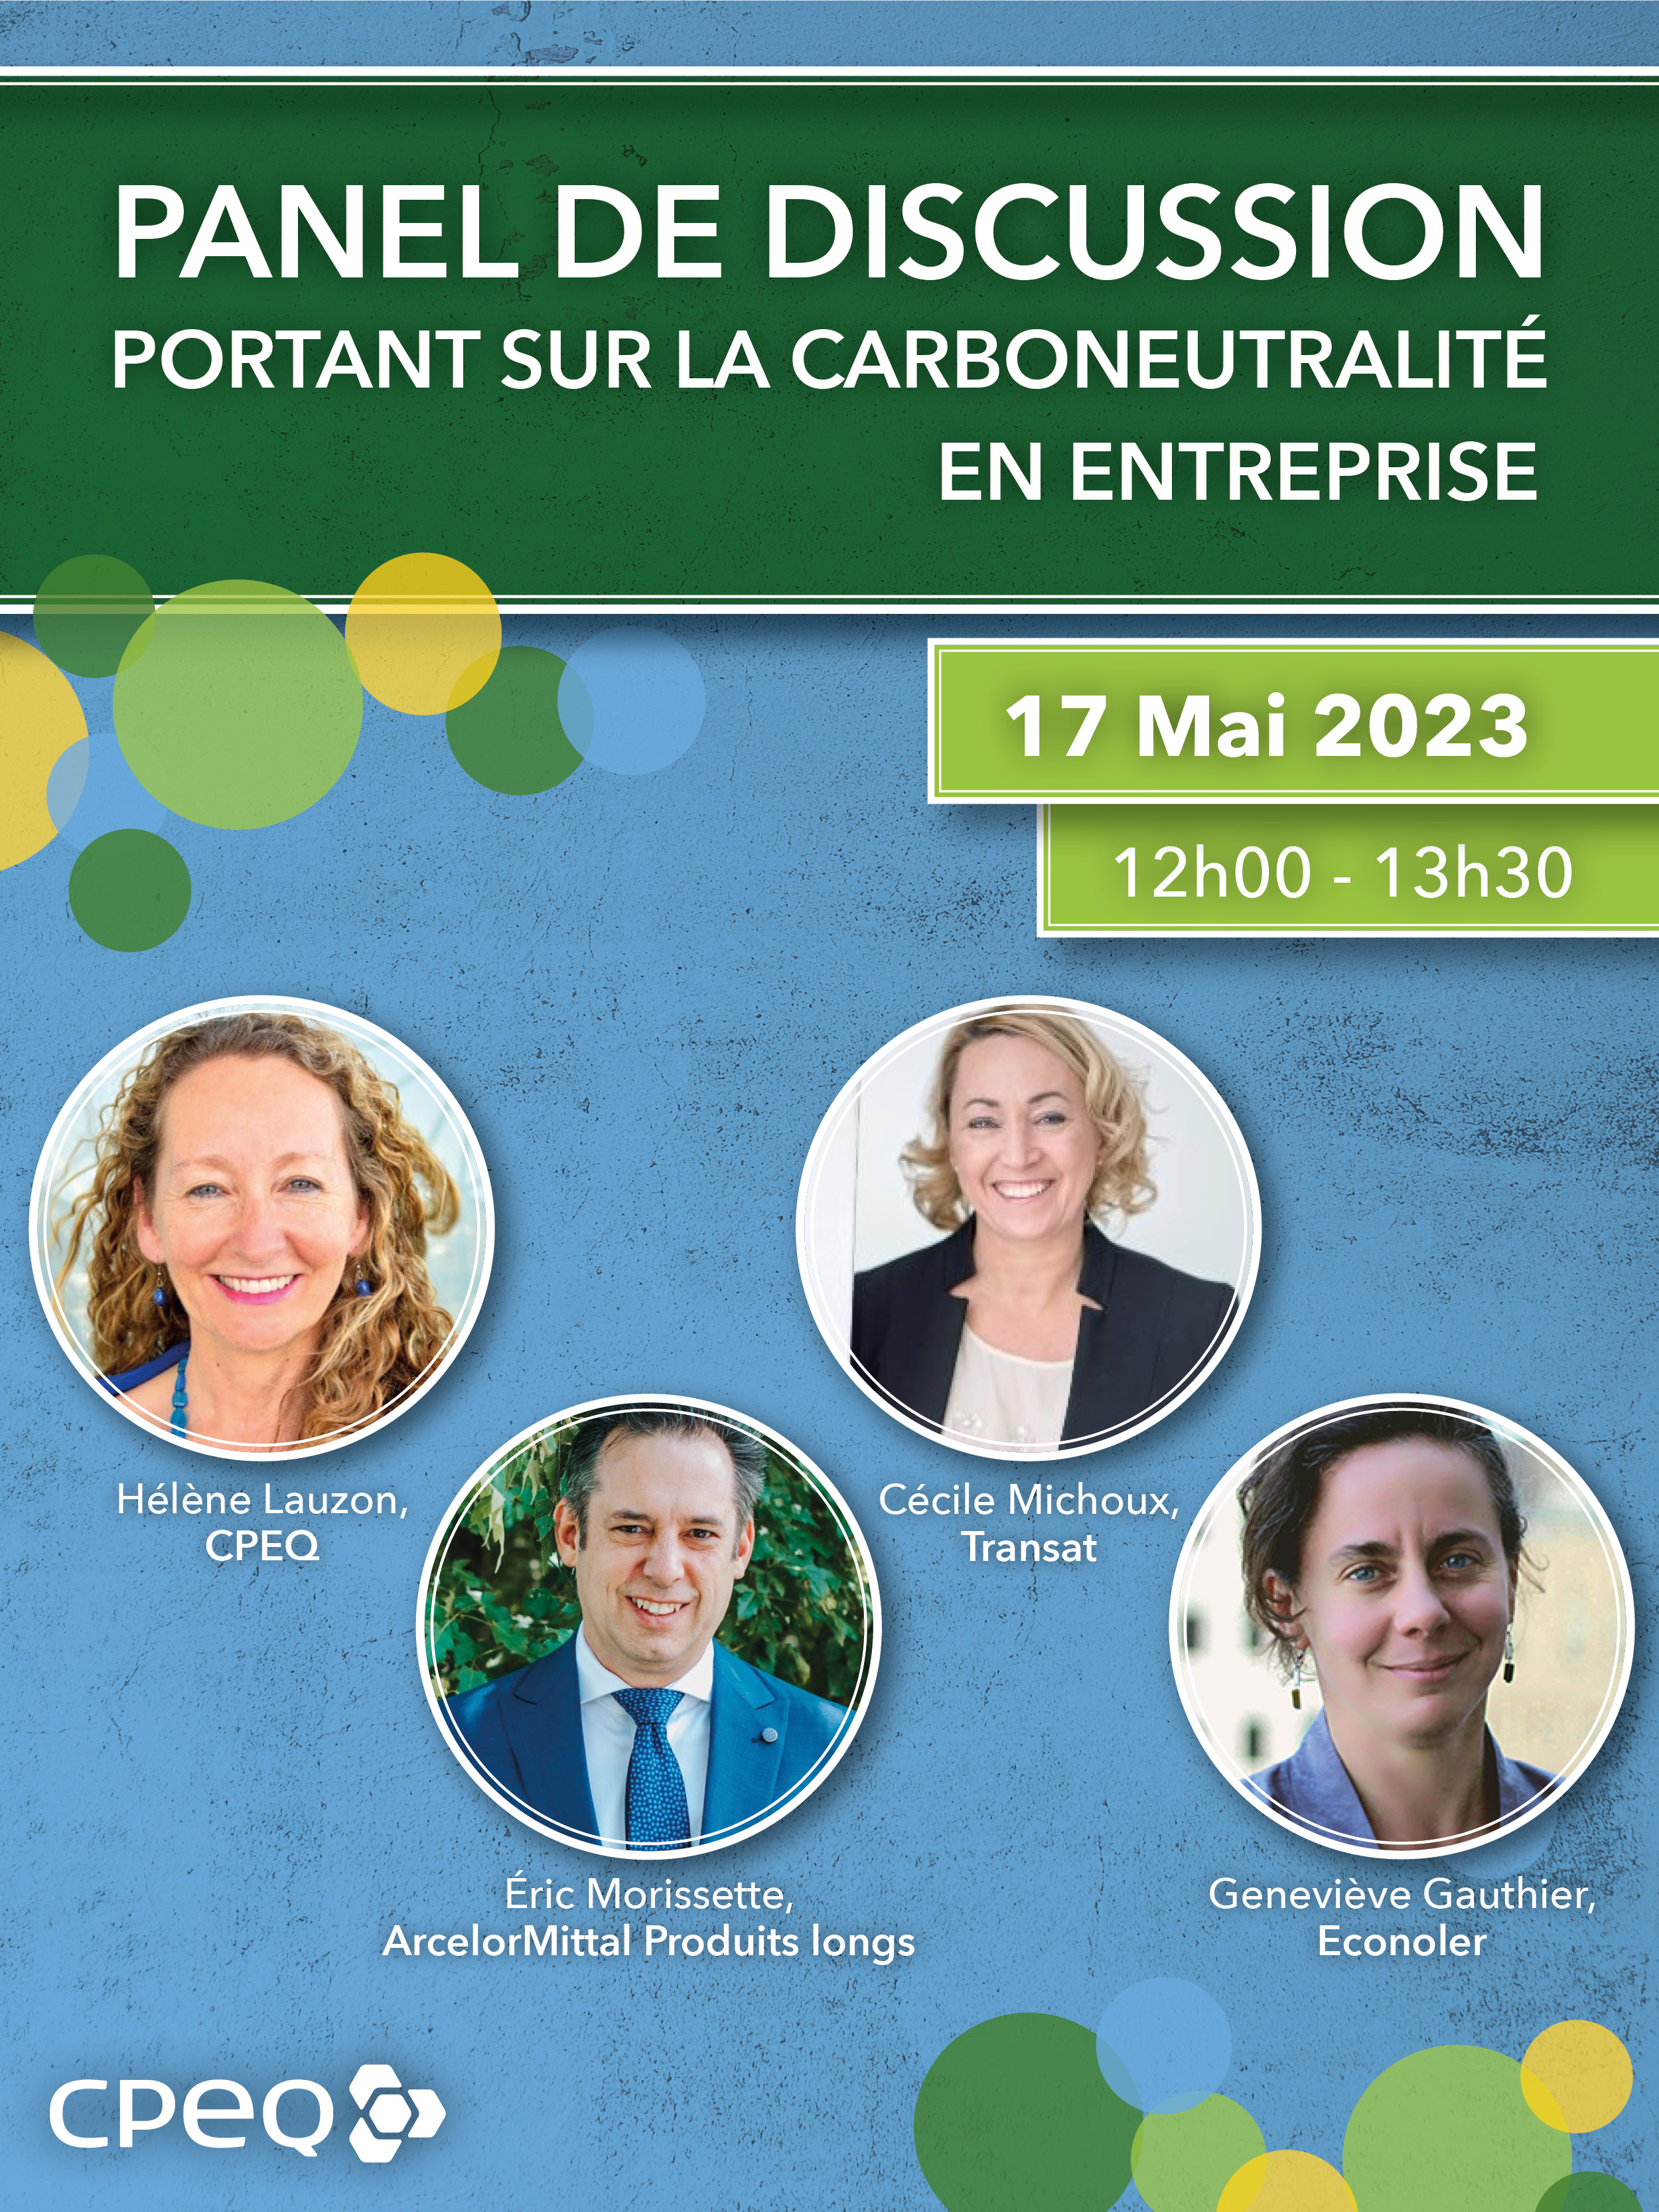 Panel de discussion portant sur la carboneutralité en entreprise - 17 mai 2023